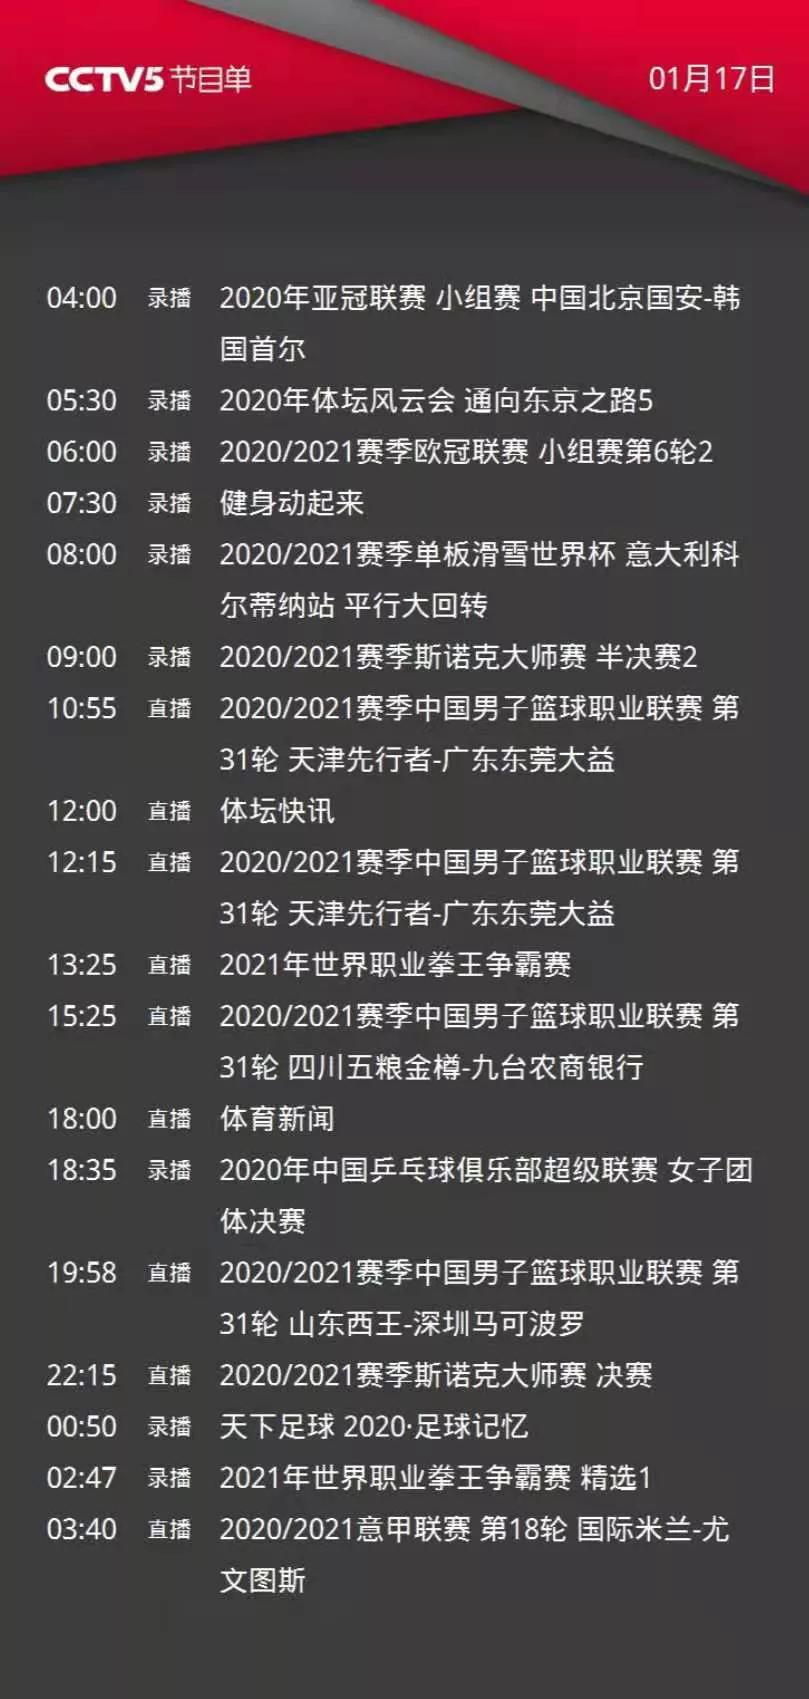 央视体育今日节目单:21:00直播颜丙涛，冲击斯诺克冠军